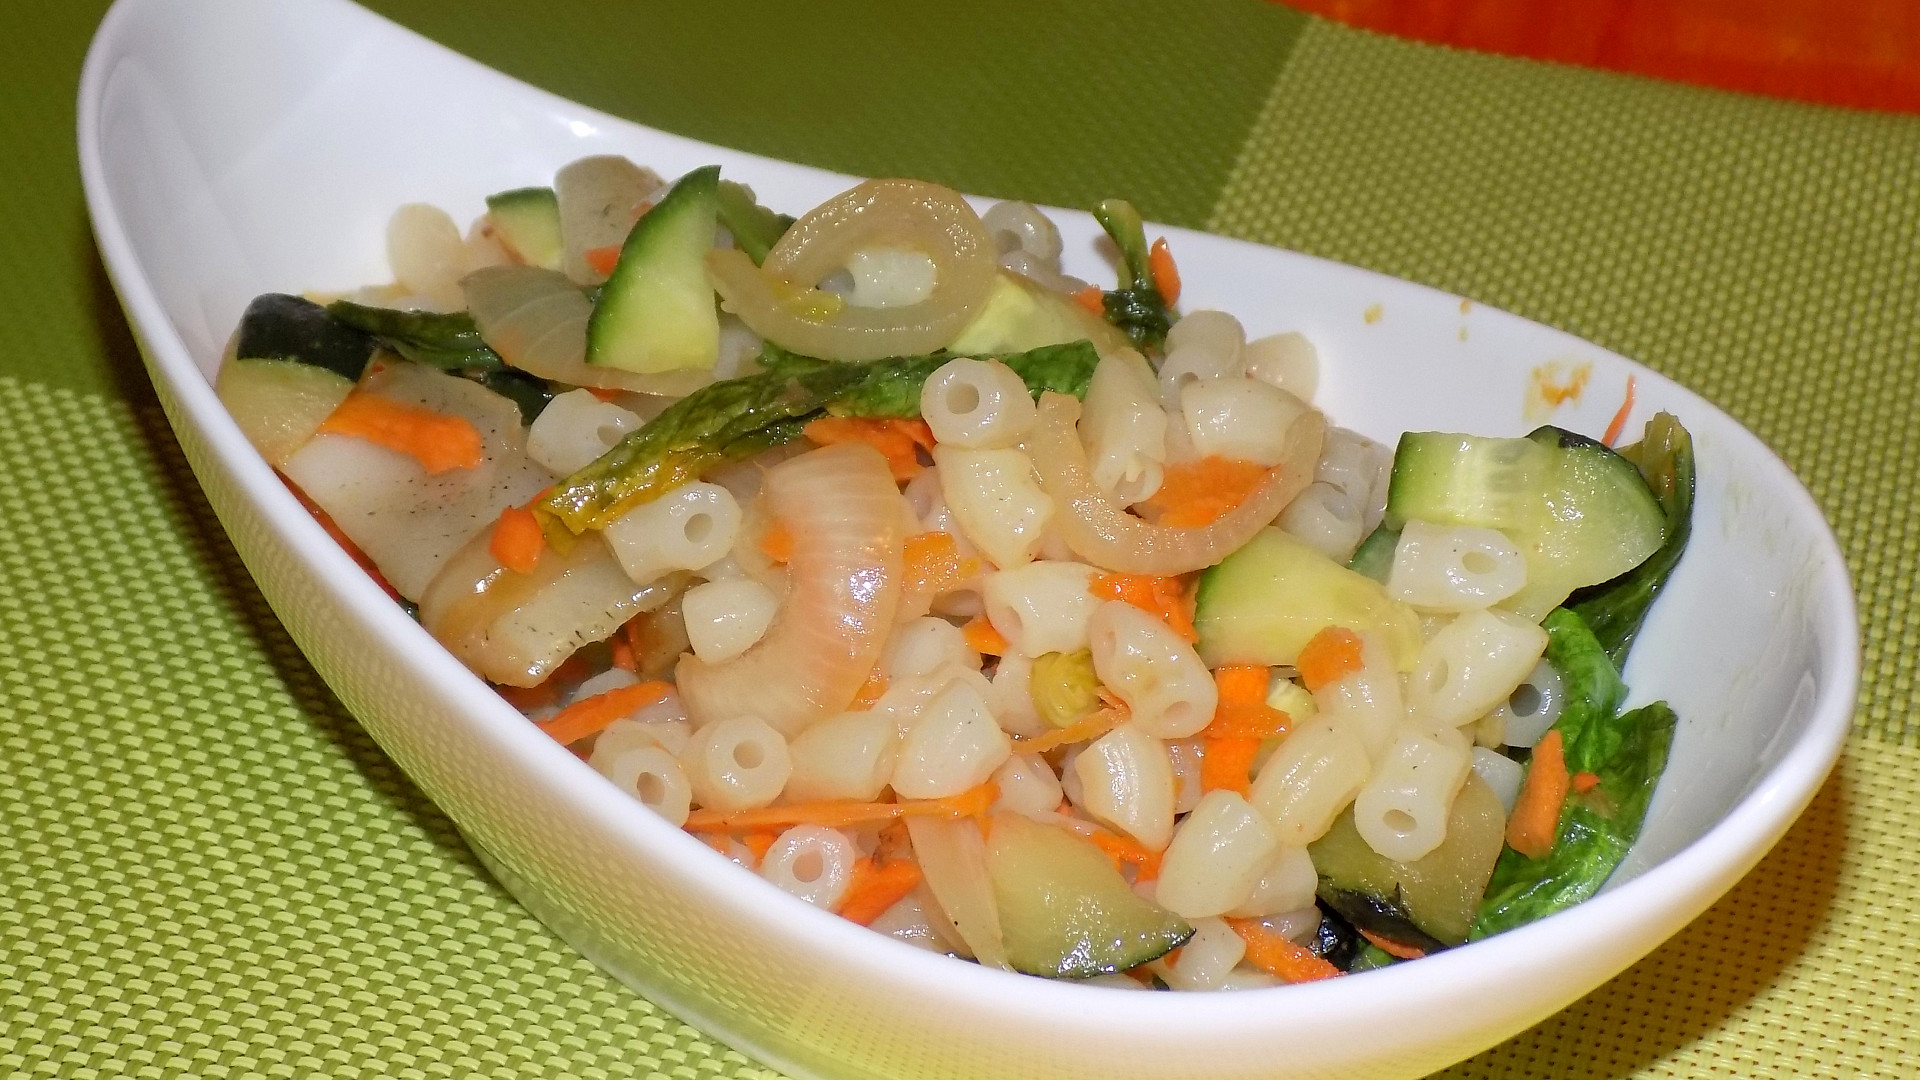 Salát se zeleninou a těstovinami